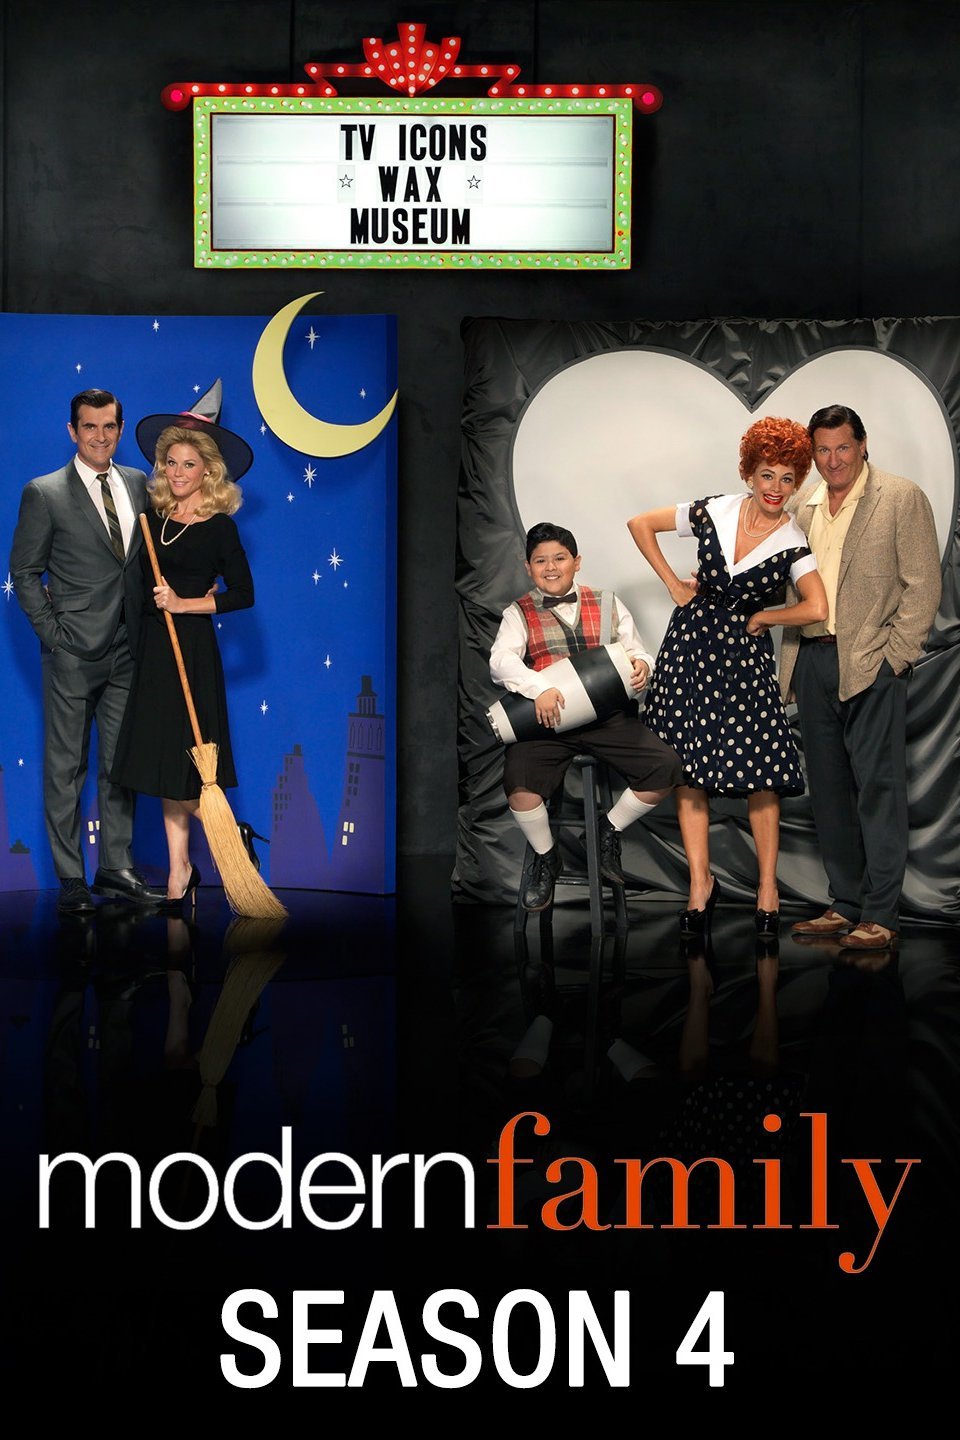 modern family poster season 6